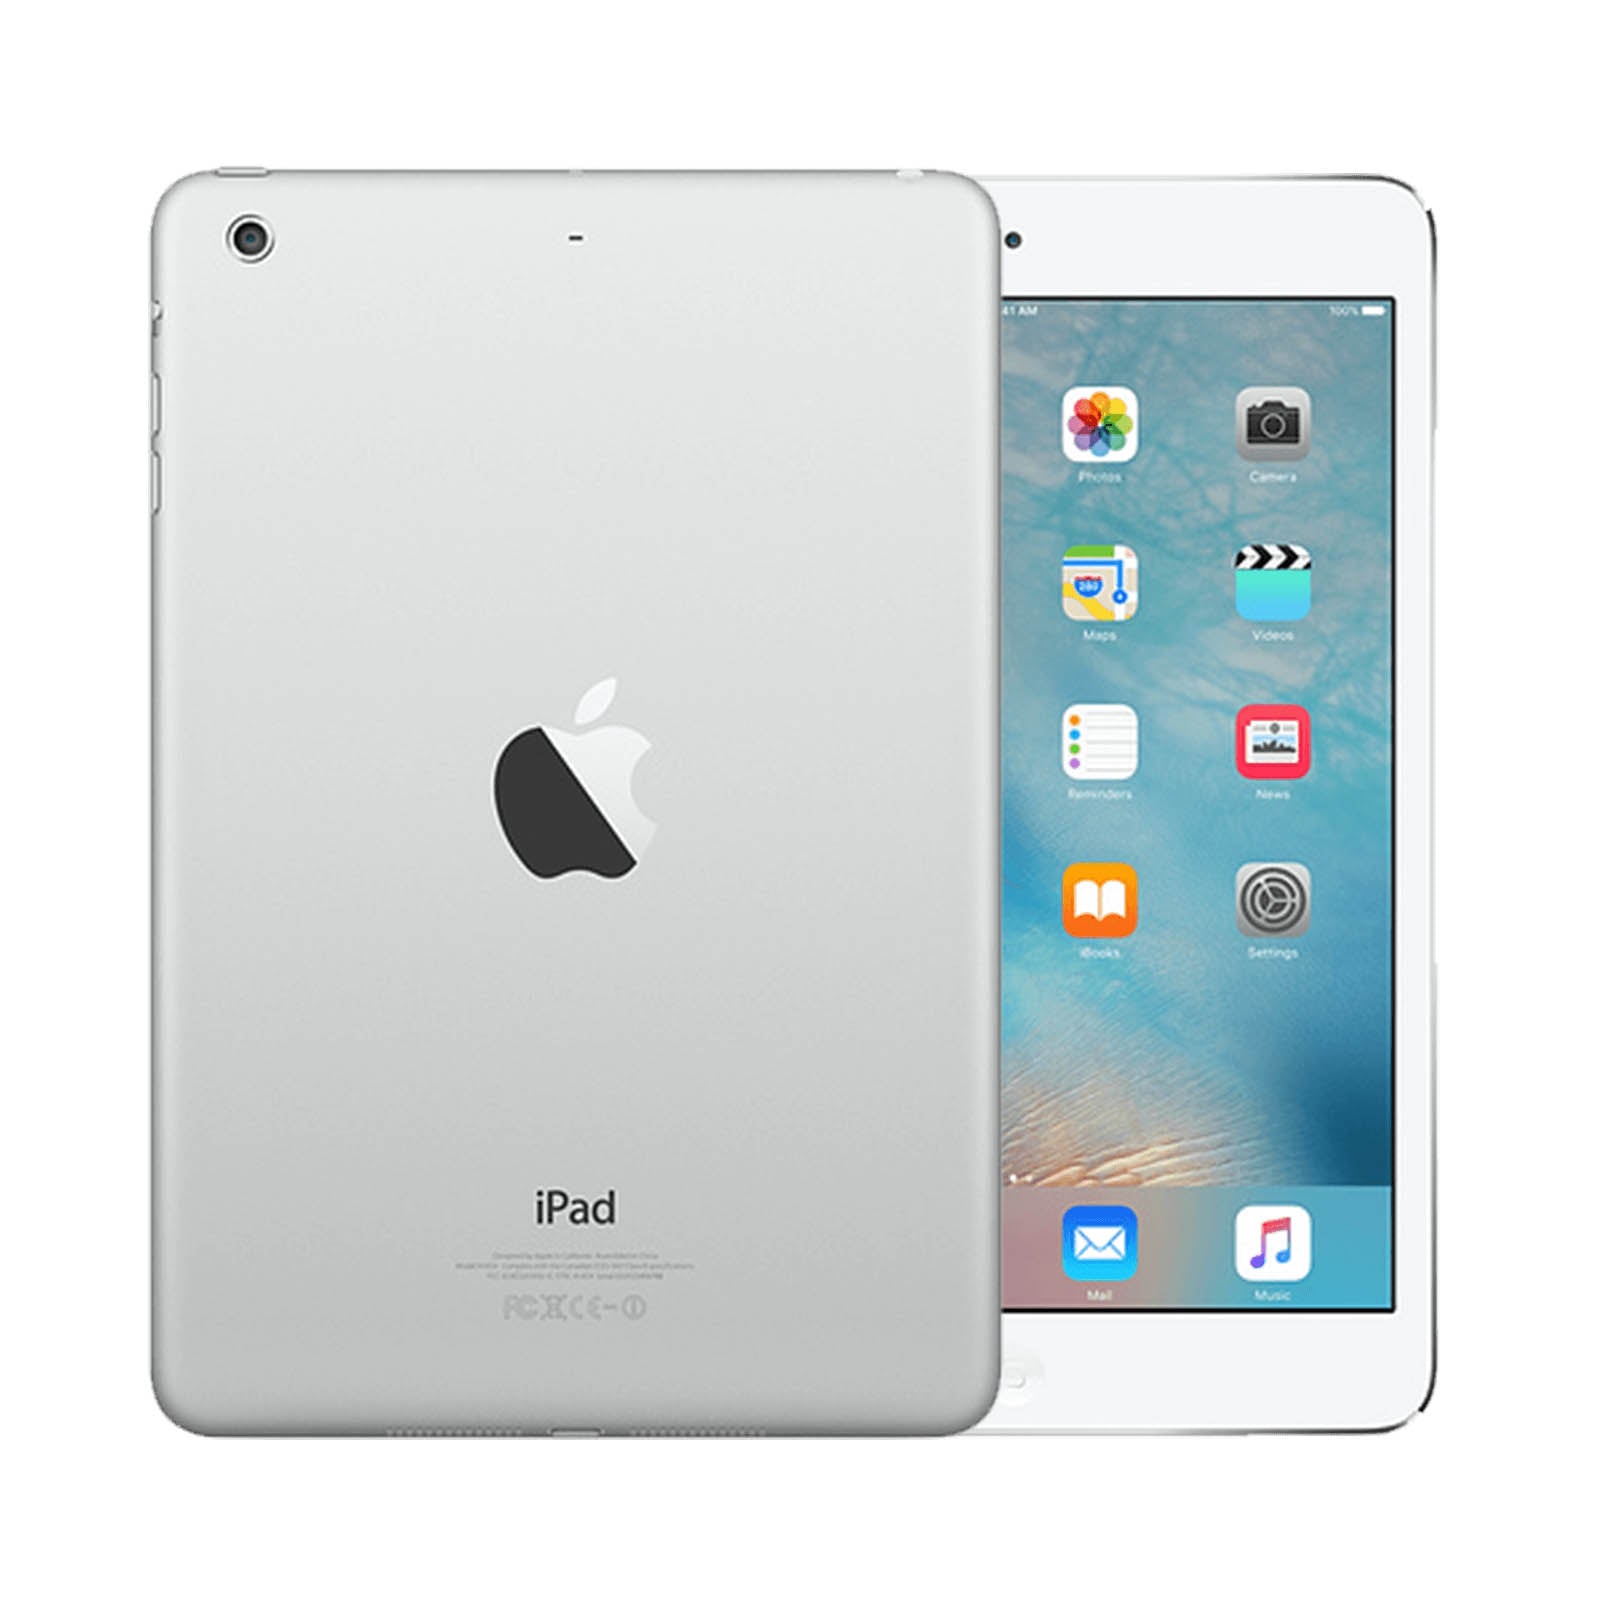 Apple iPad mini 2 16GB White Good - Unlocked